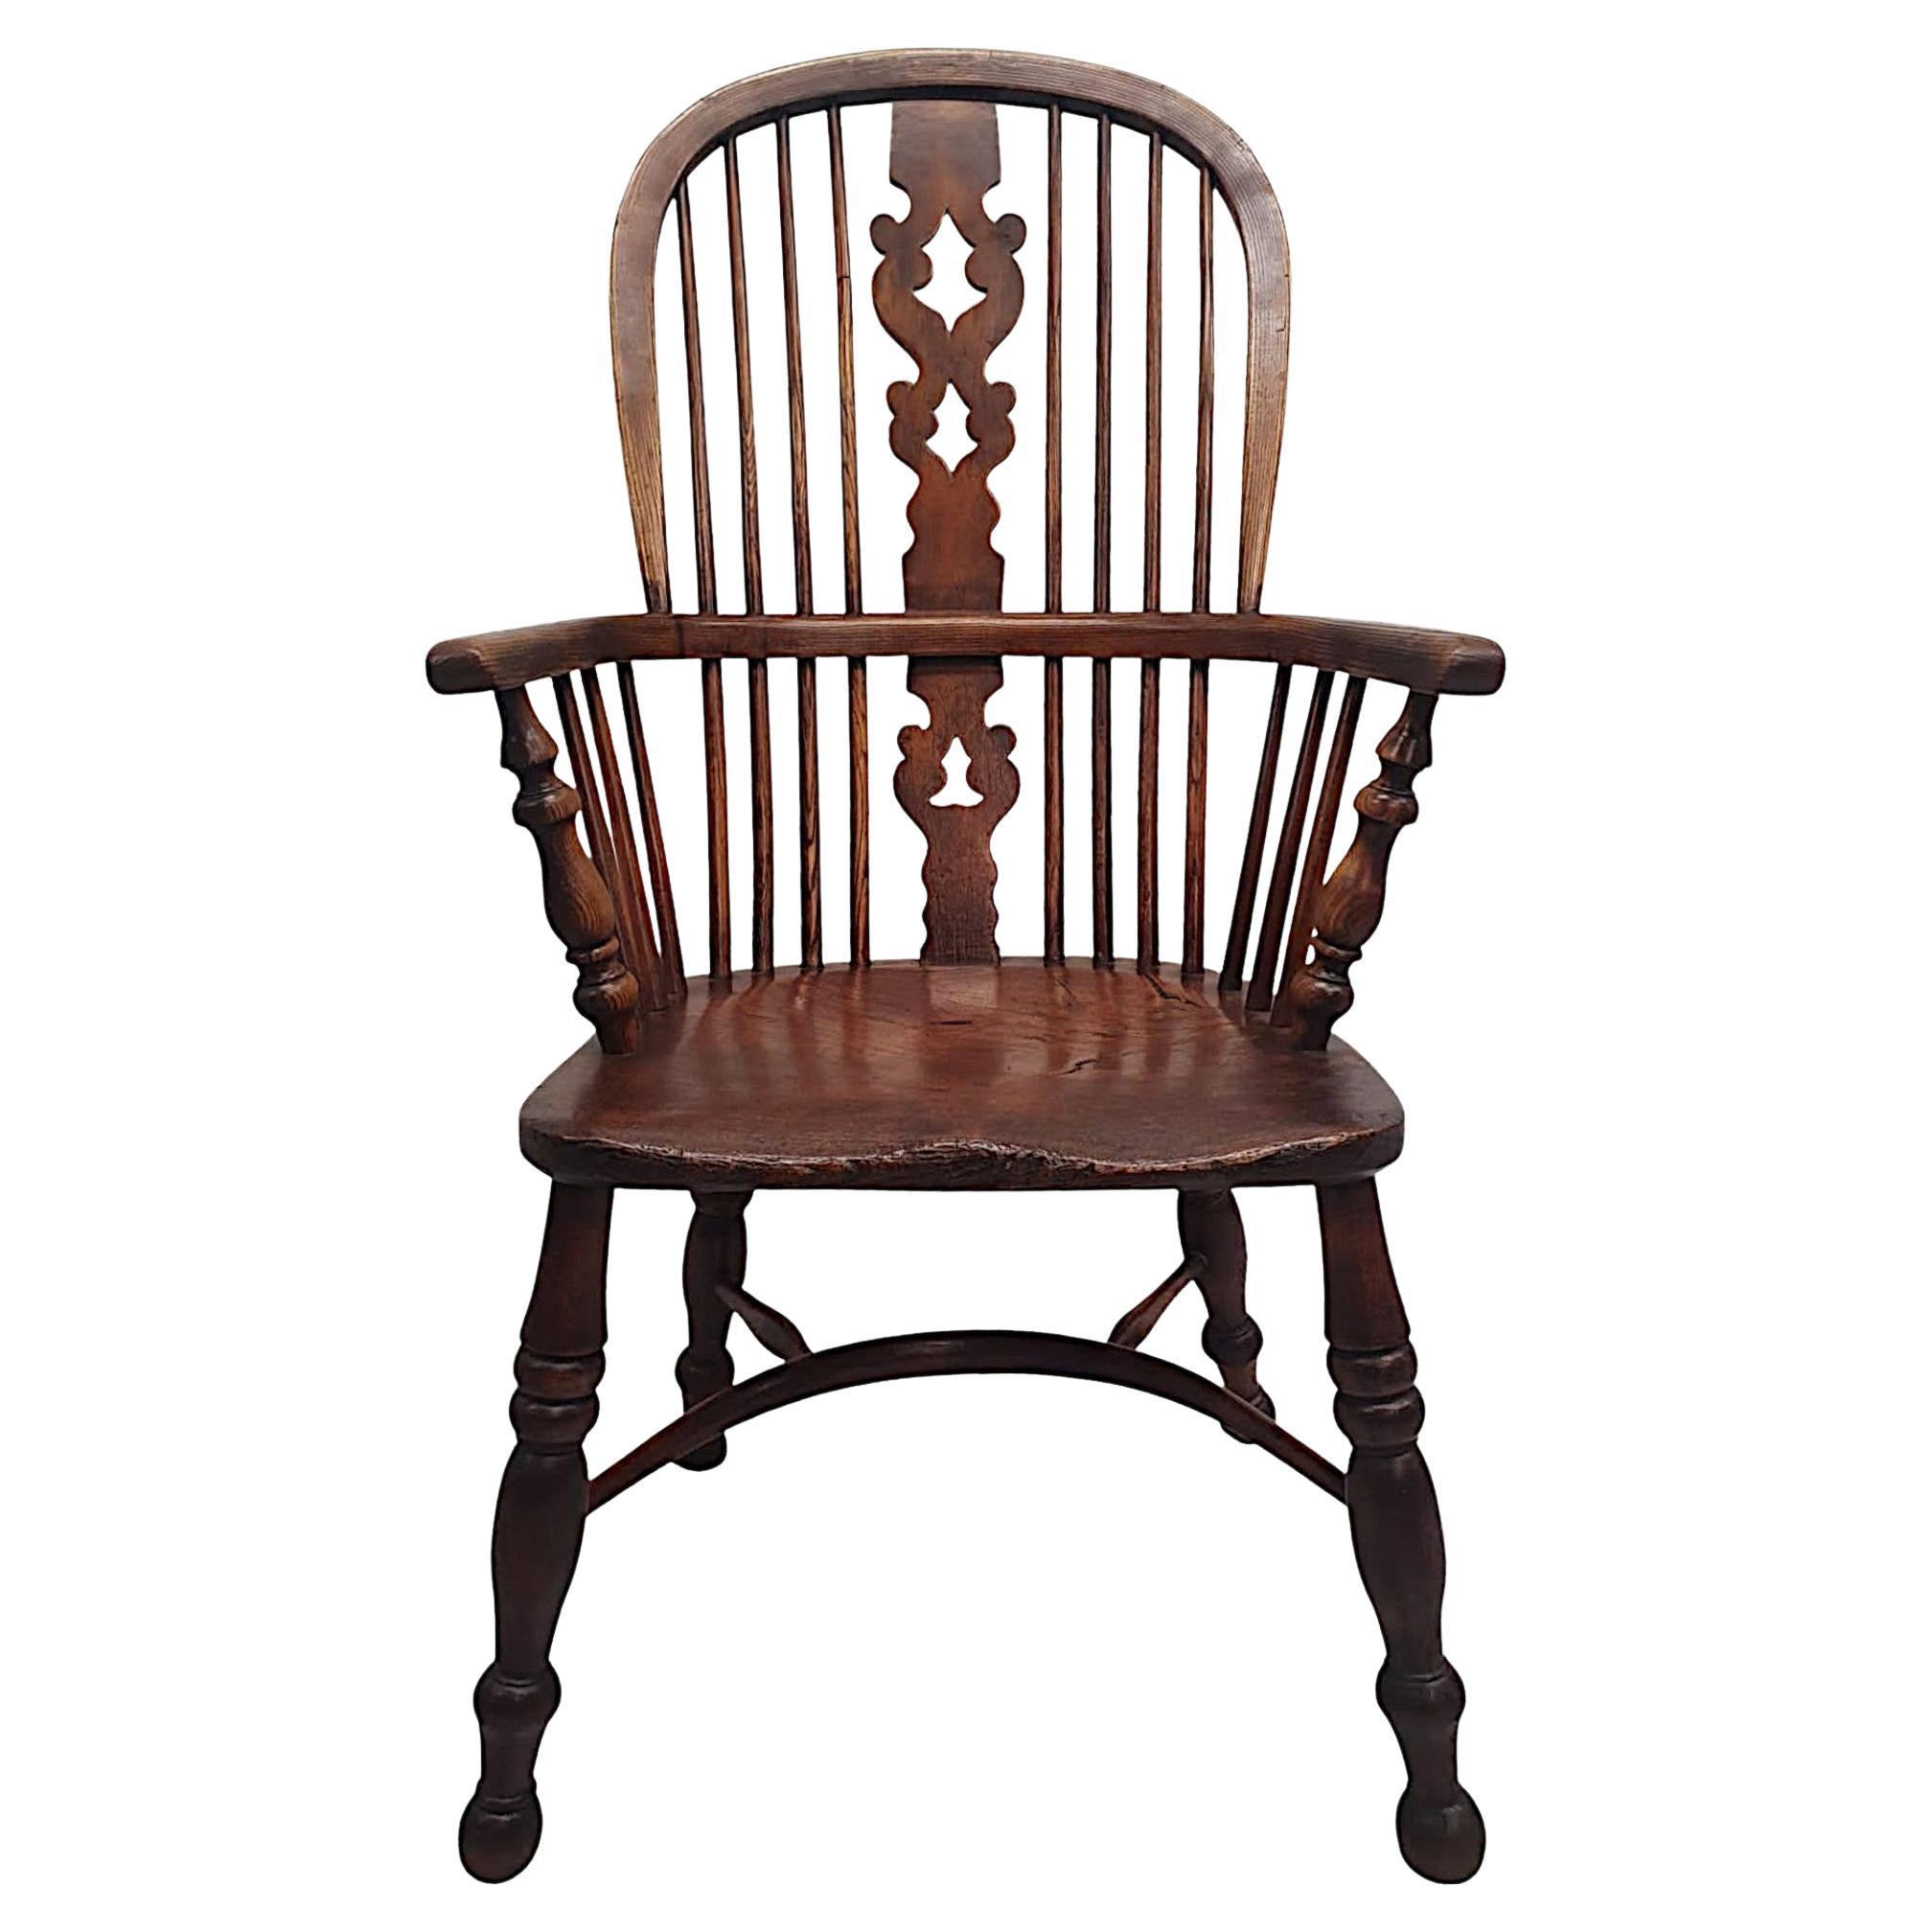 Très rare fauteuil Windsor du 19ème siècle à haut dossier